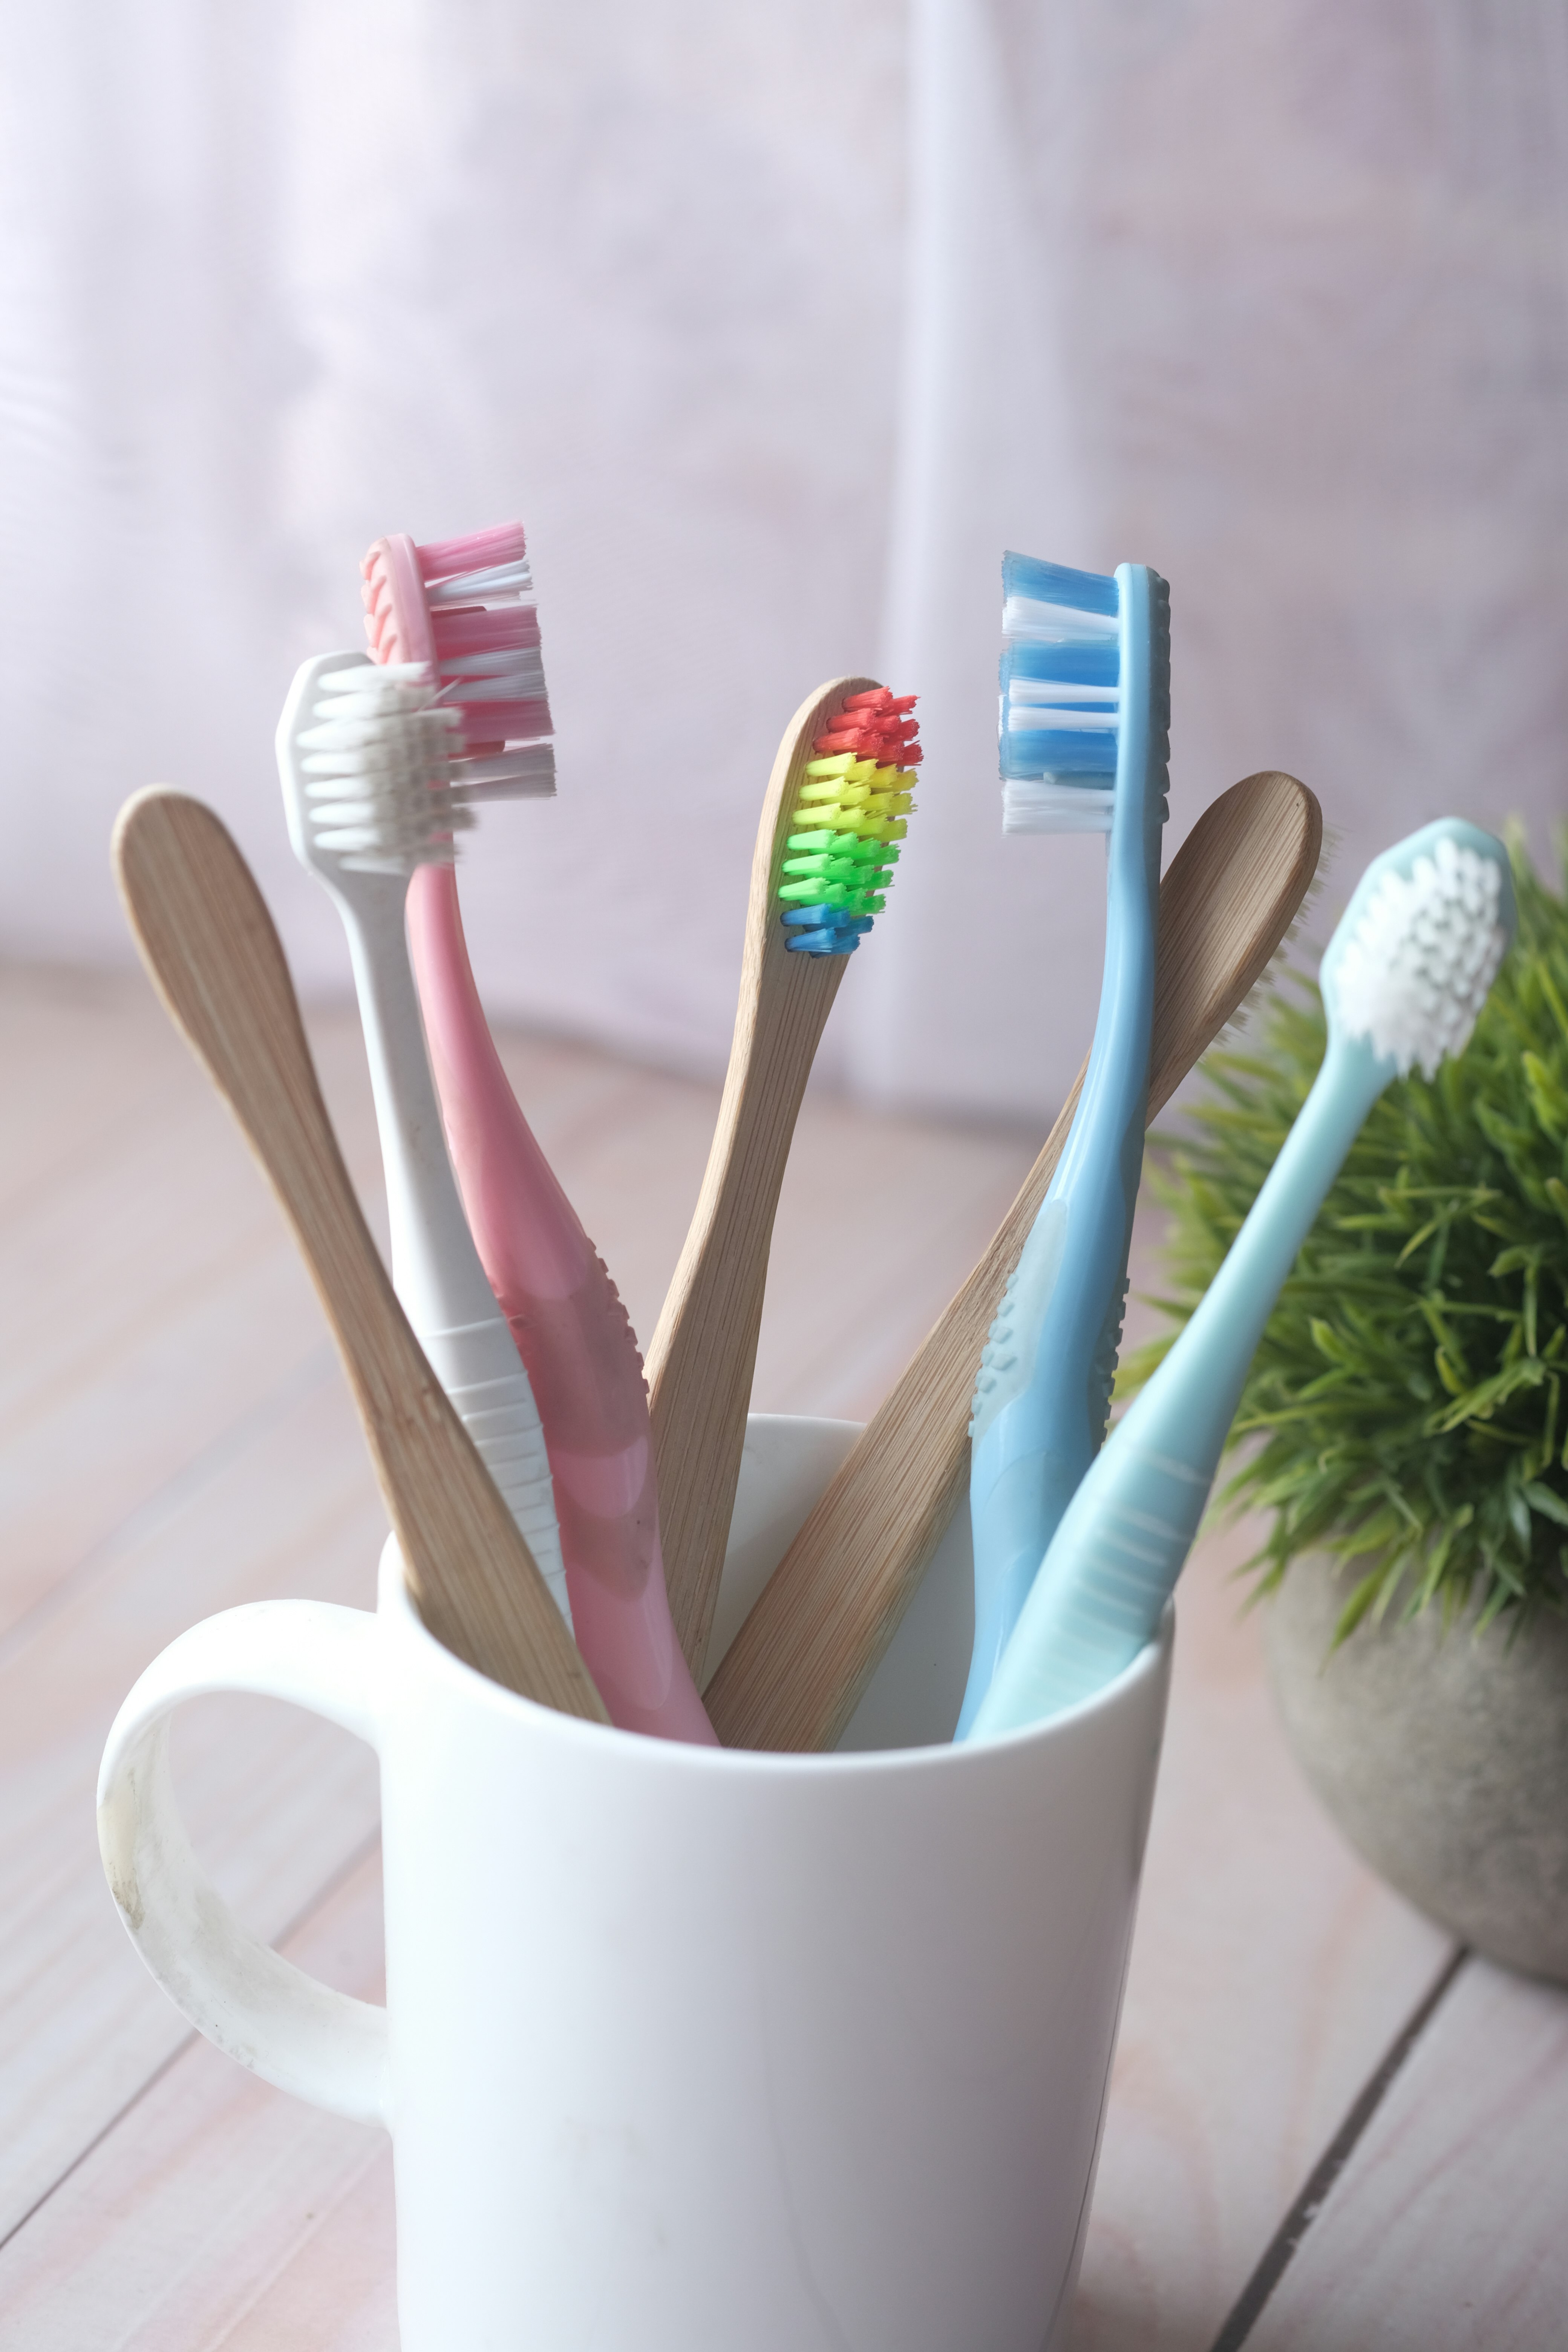 Définition de brosse à dents | Dictionnaire français